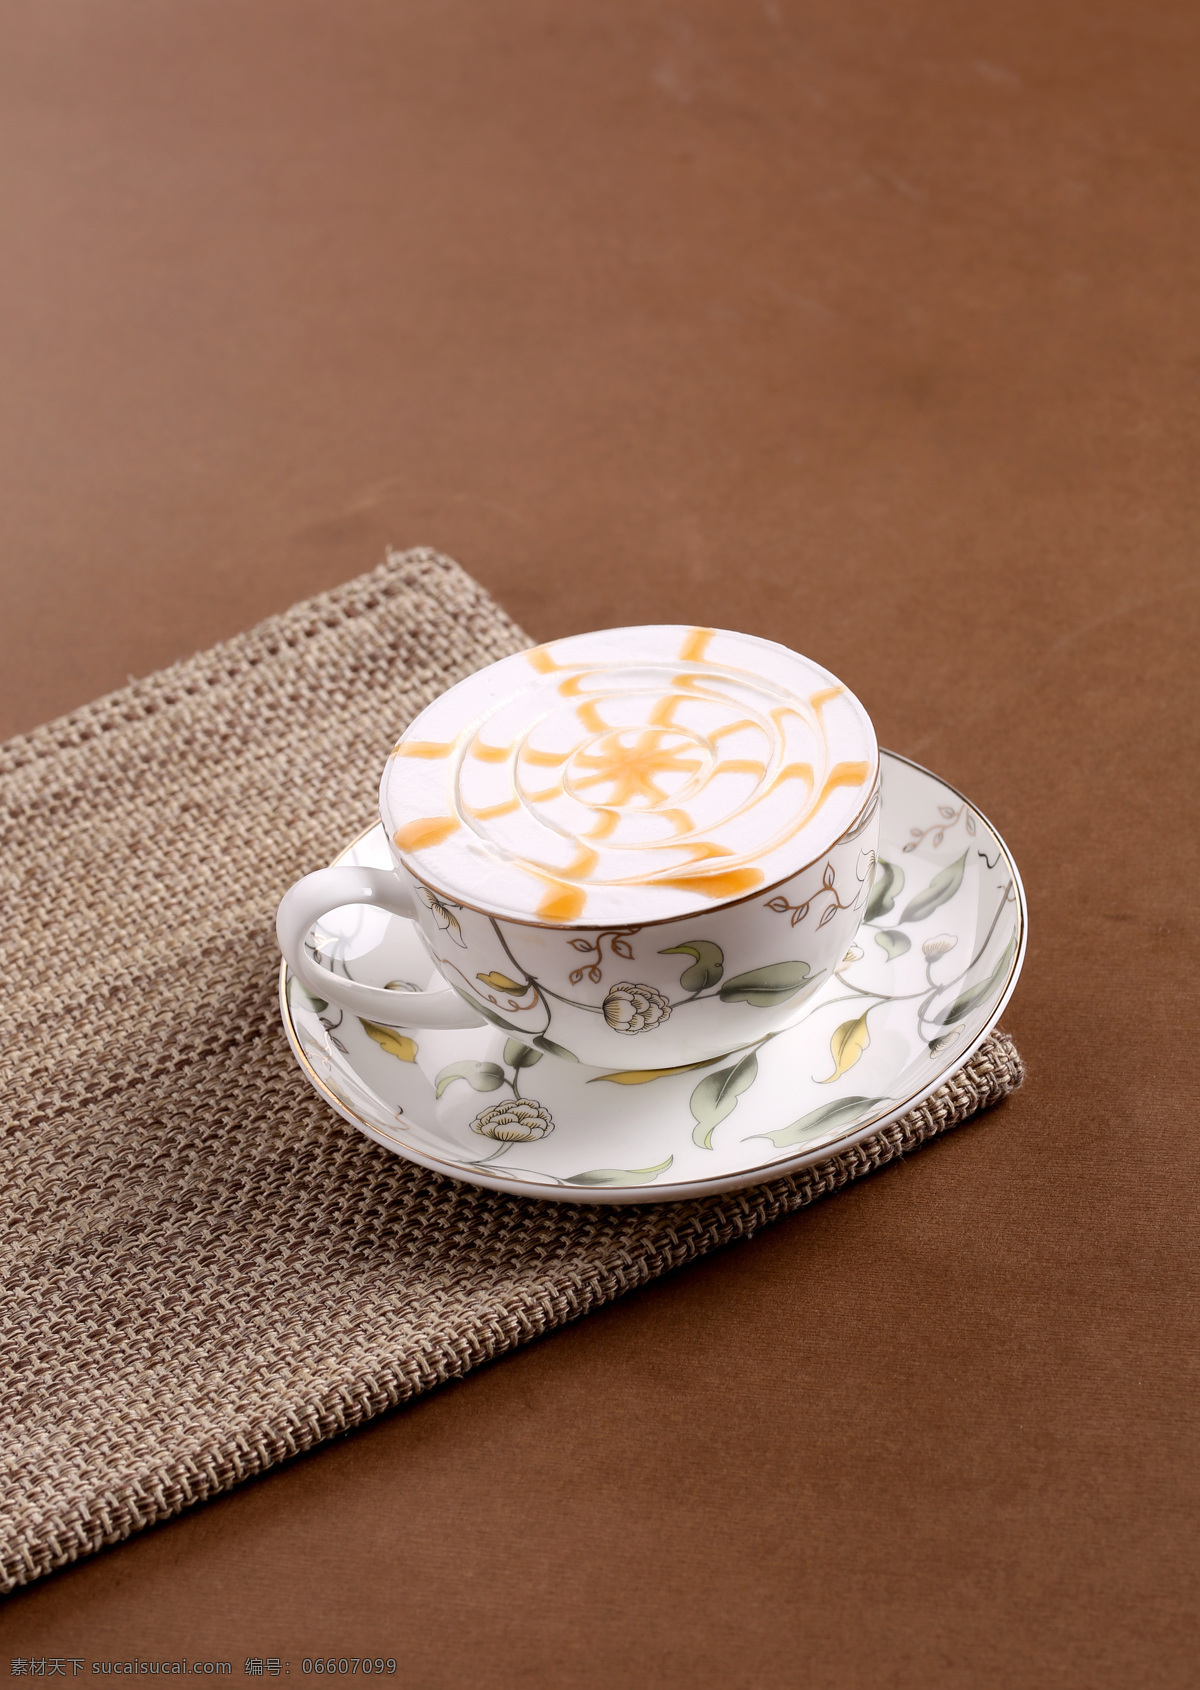 焦糖玛奇朵 咖啡 花式咖啡 咖啡杯 精美瓷器 西餐美食 餐饮美食